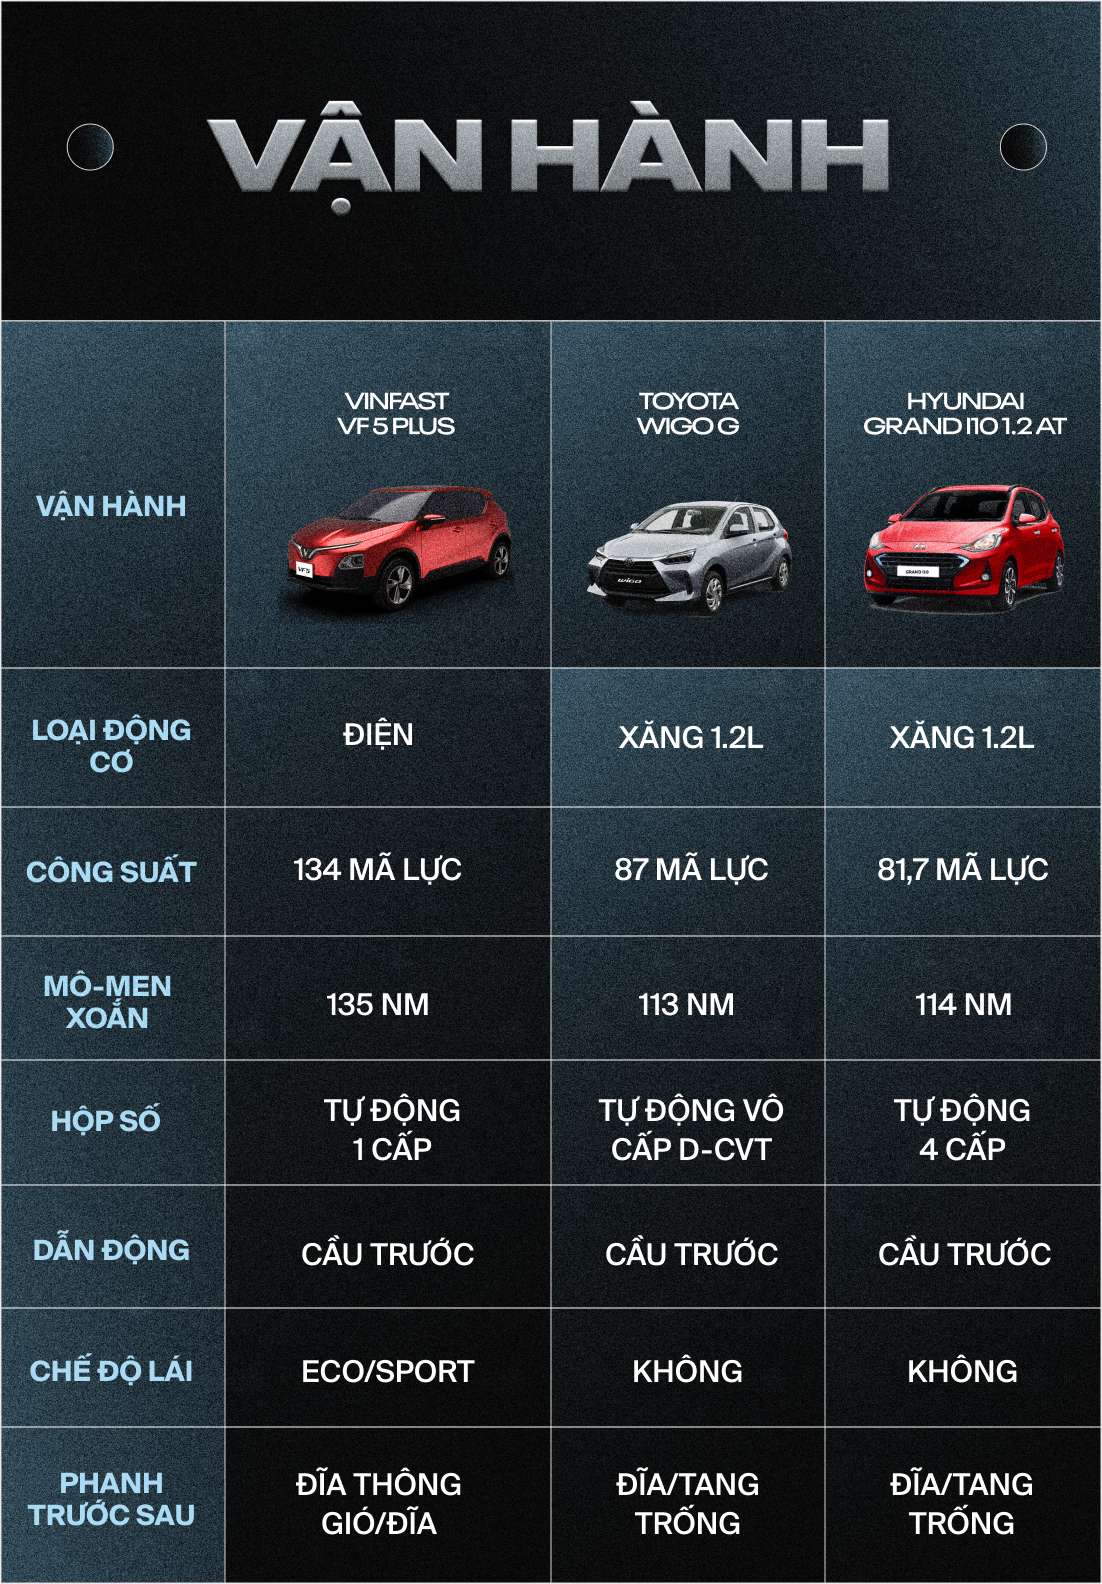 Giá lăn bánh ngang nhau, VinFast VF 5 Plus trang bị vượt trội Toyota Wigo, Hyundai i10 - Ảnh 5.